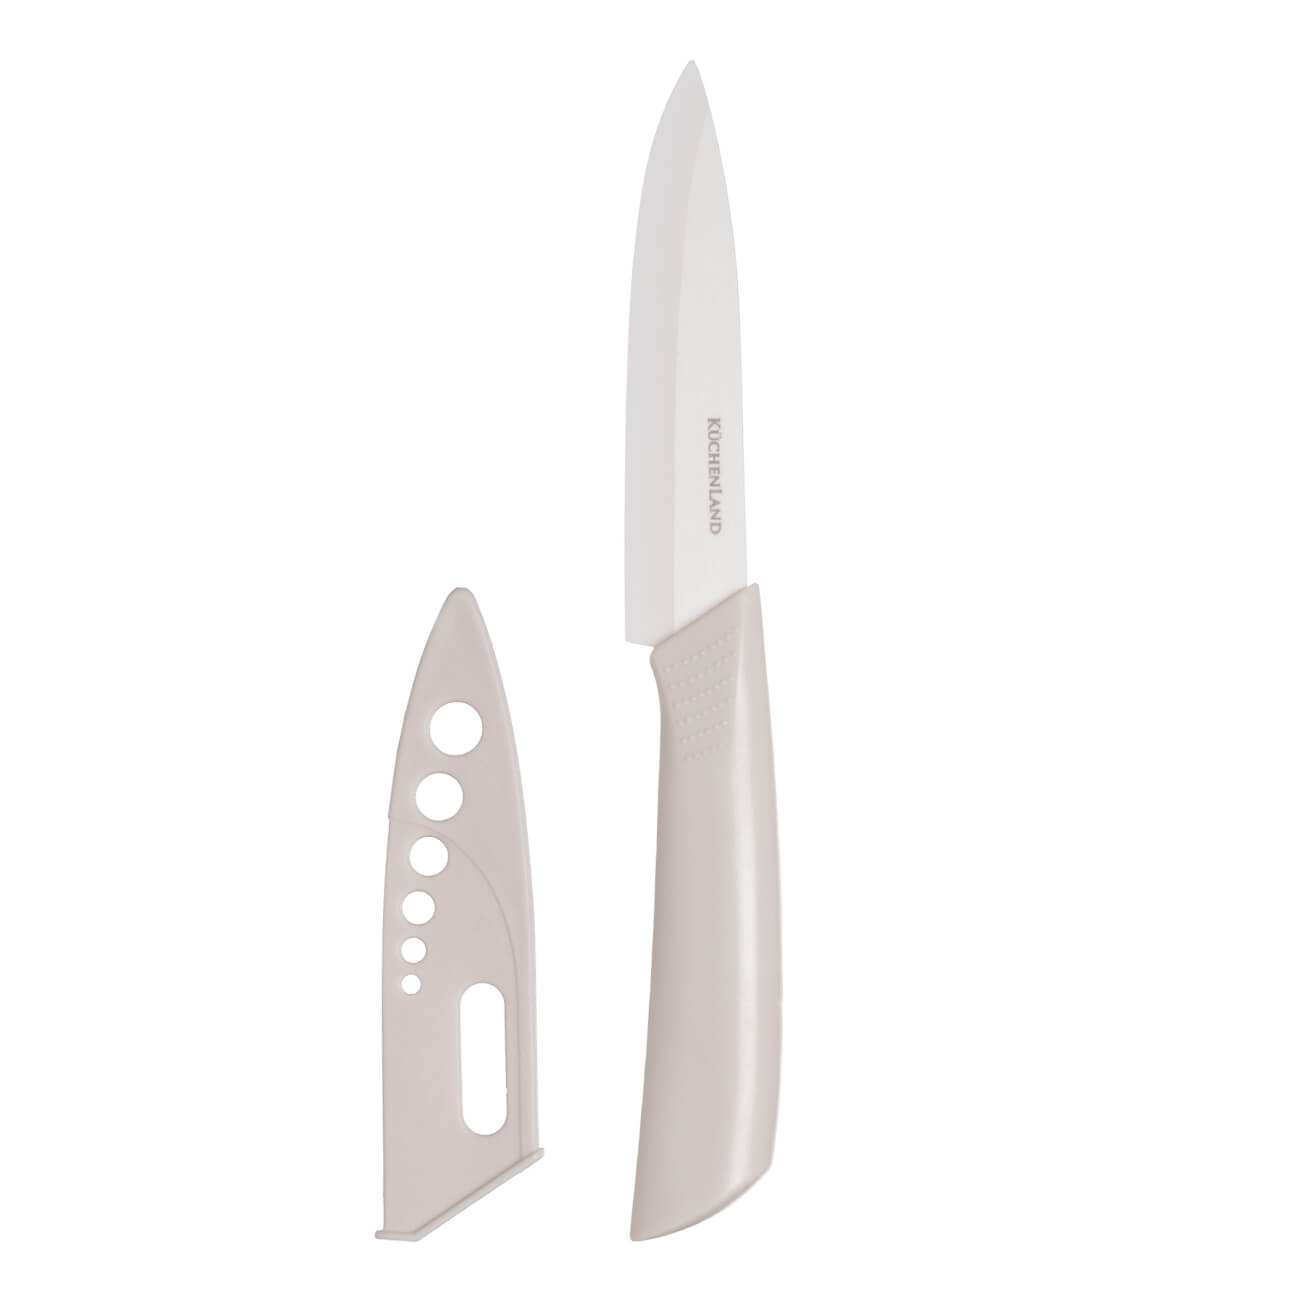 Нож для нарезки, 15 см, с чехлом, керамика/пластик, молочный, Regular горшок для ов пластик 0 5 л 10 5х9 2х10 8 см молочный радиан элеганс